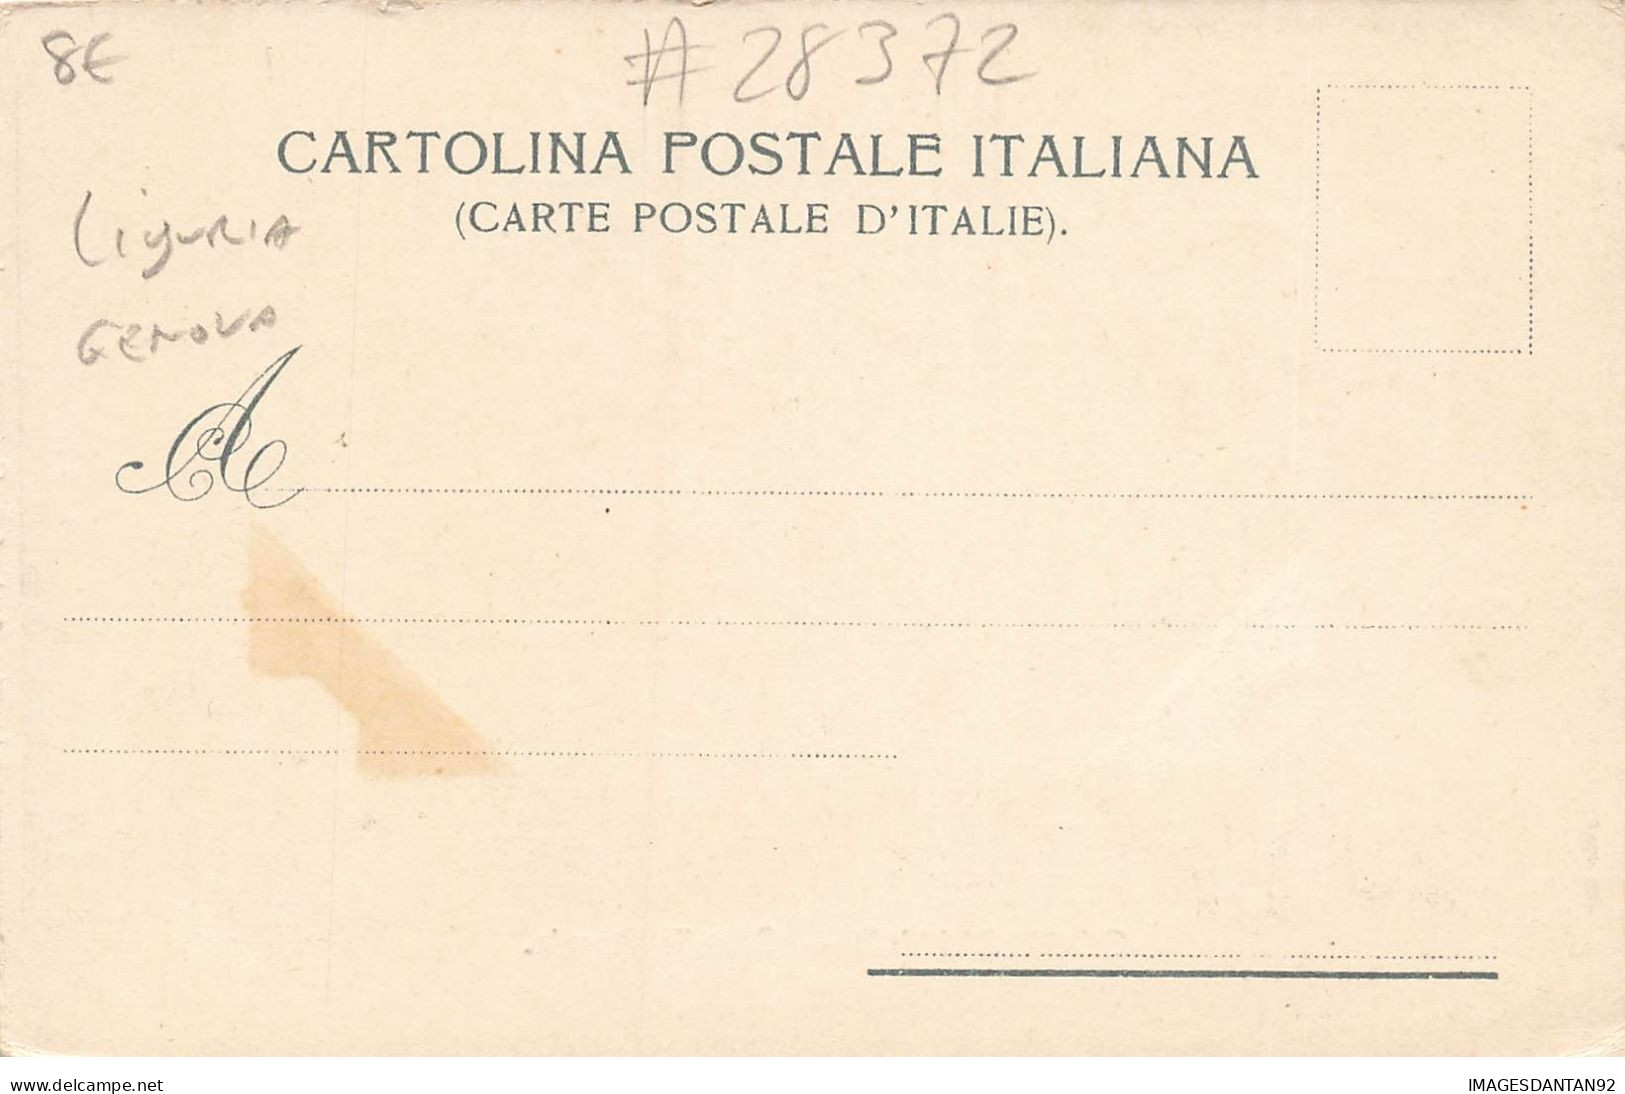 ITALIE ITALIA #28372 UN SALUTO DA CORNIGLIANO CASTELLO RAGGIO - Genova (Genoa)